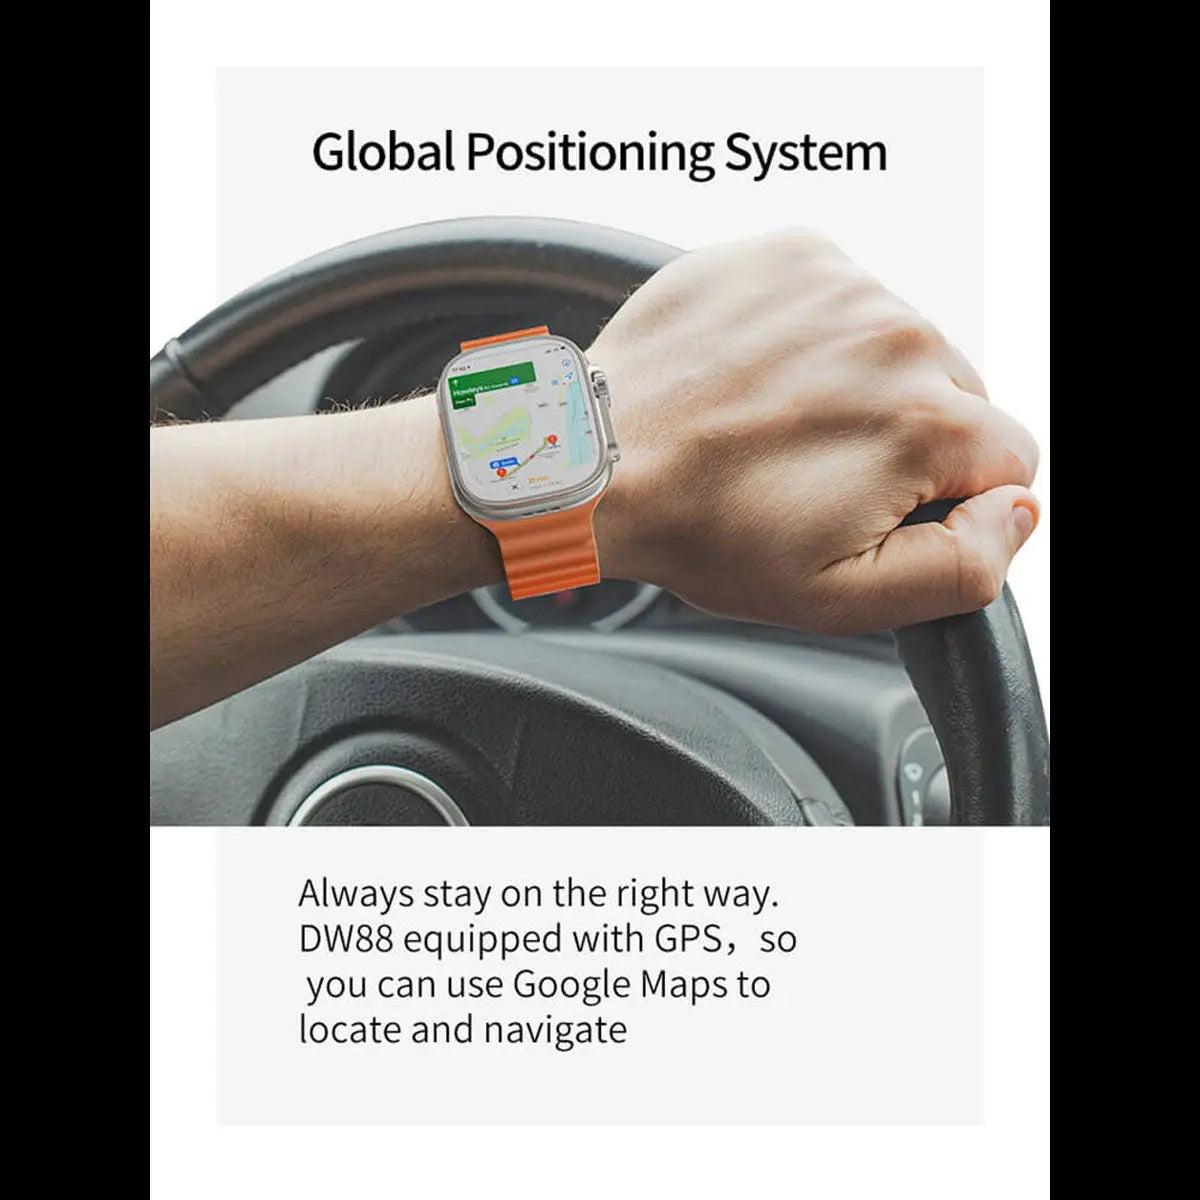 Reloj Smartwatch Dw88 4g Wifi Android 8.1 4gb Ram 64gb Rom Fralugio